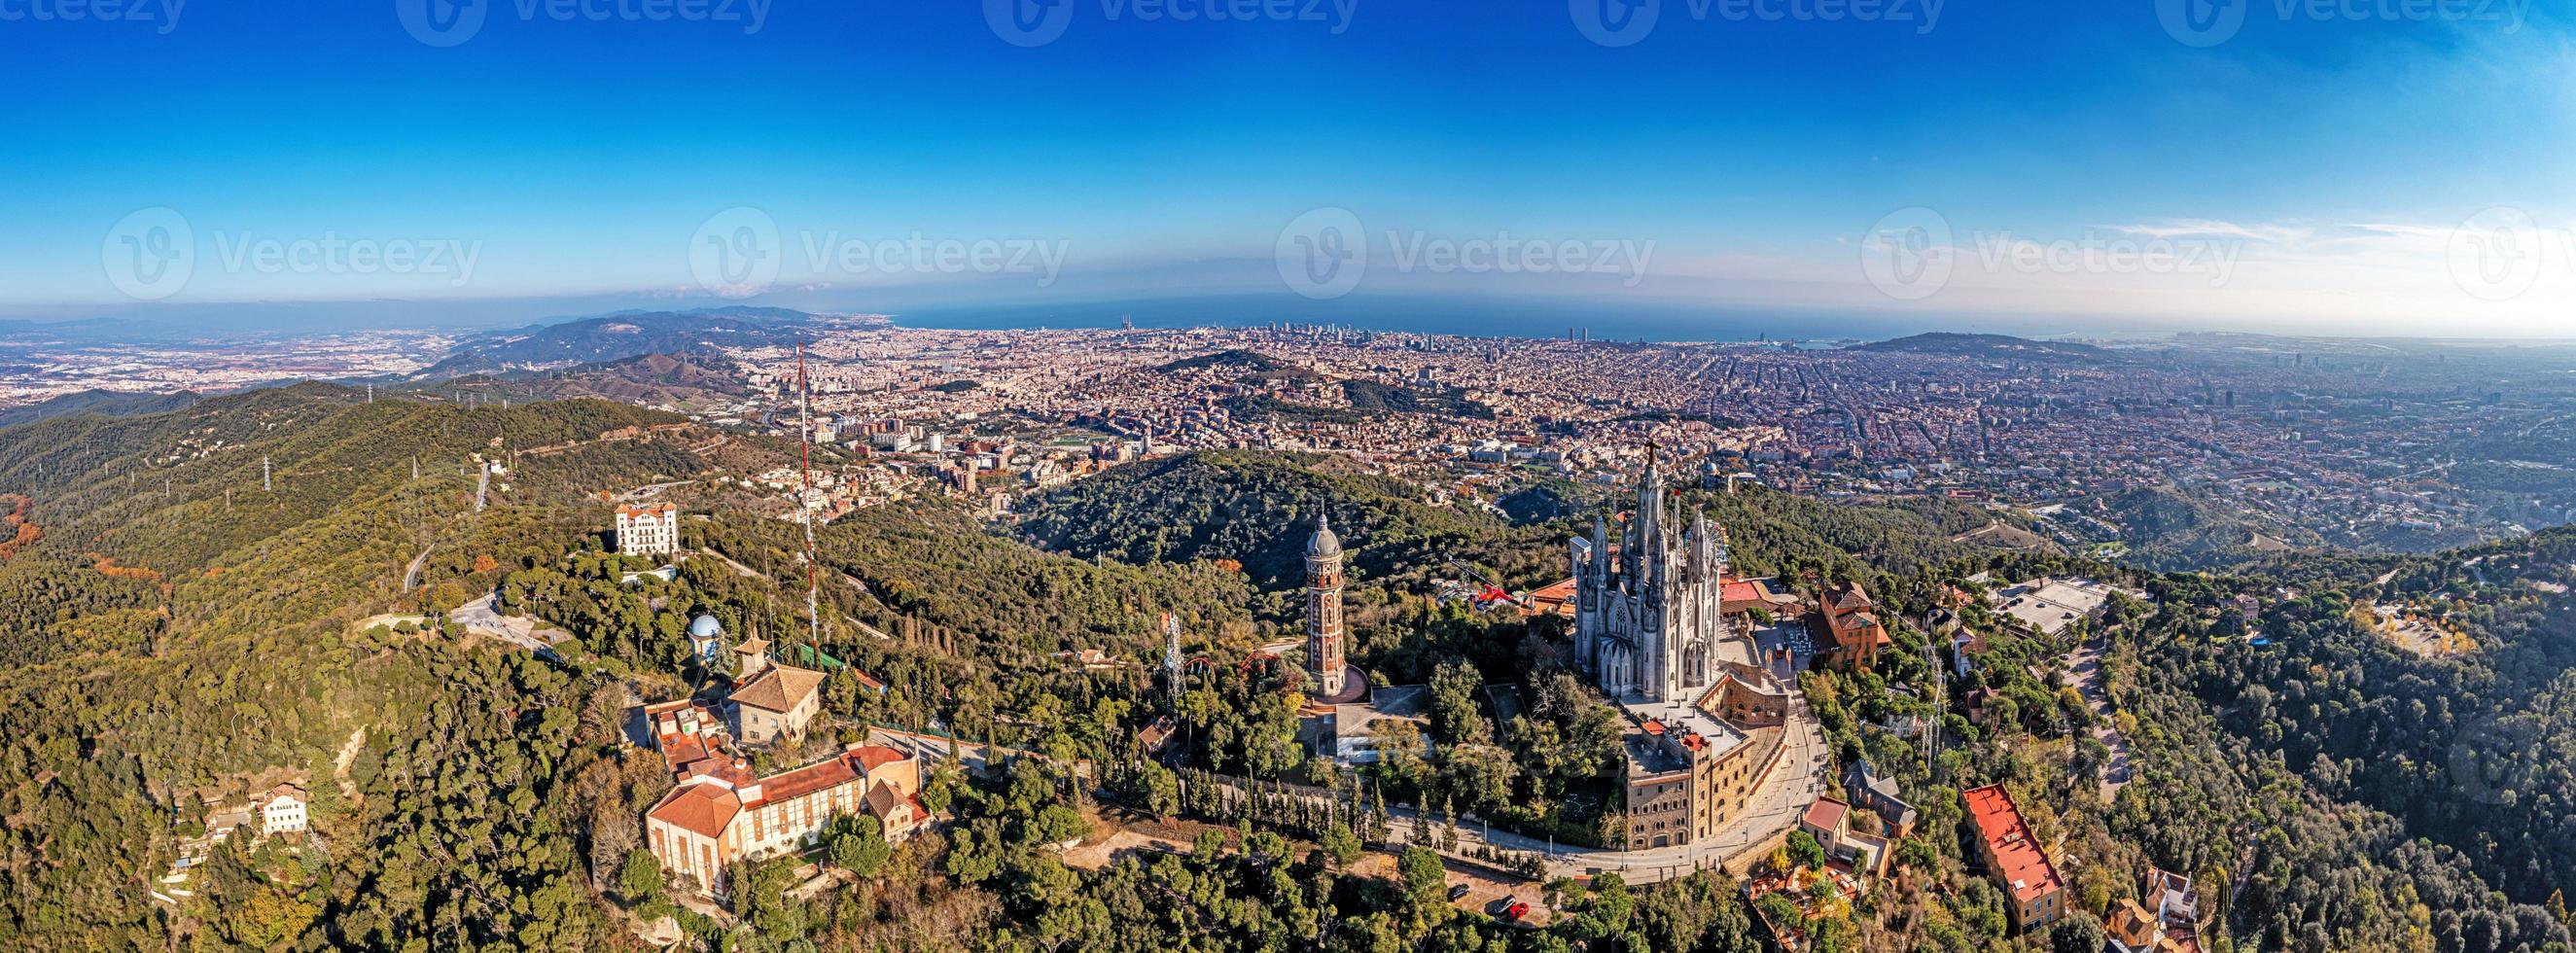 panorama de drones sur la métropole catalane de barcelone pris de la direction de tibidabo pendant la journée photo